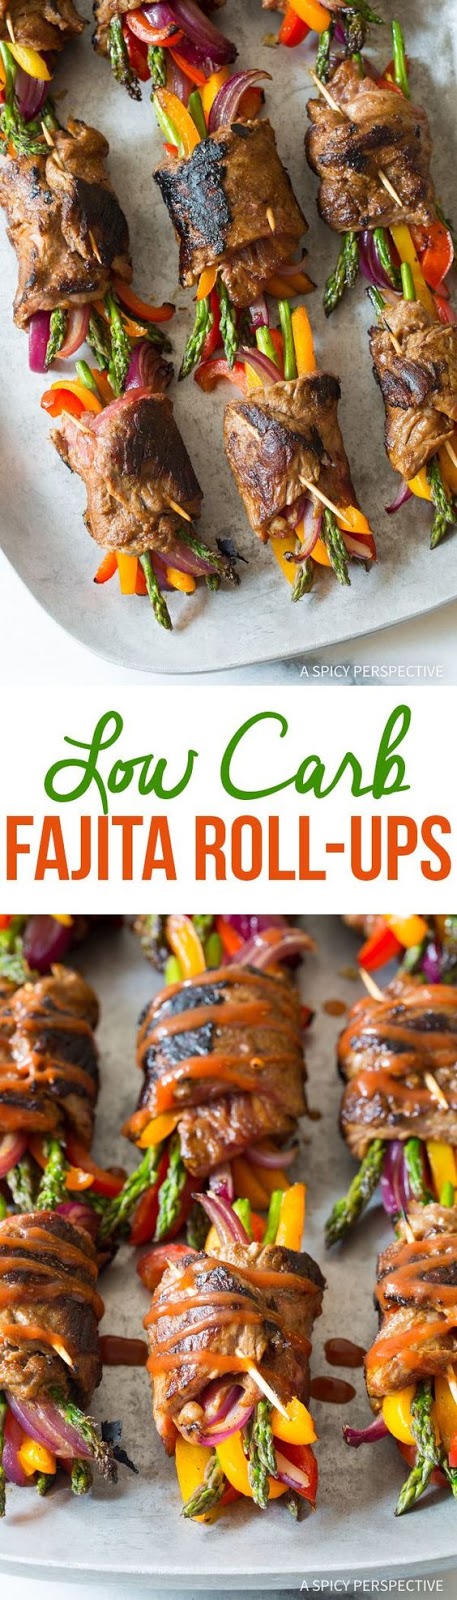 Low Carb Steak Fajita Roll-Ups